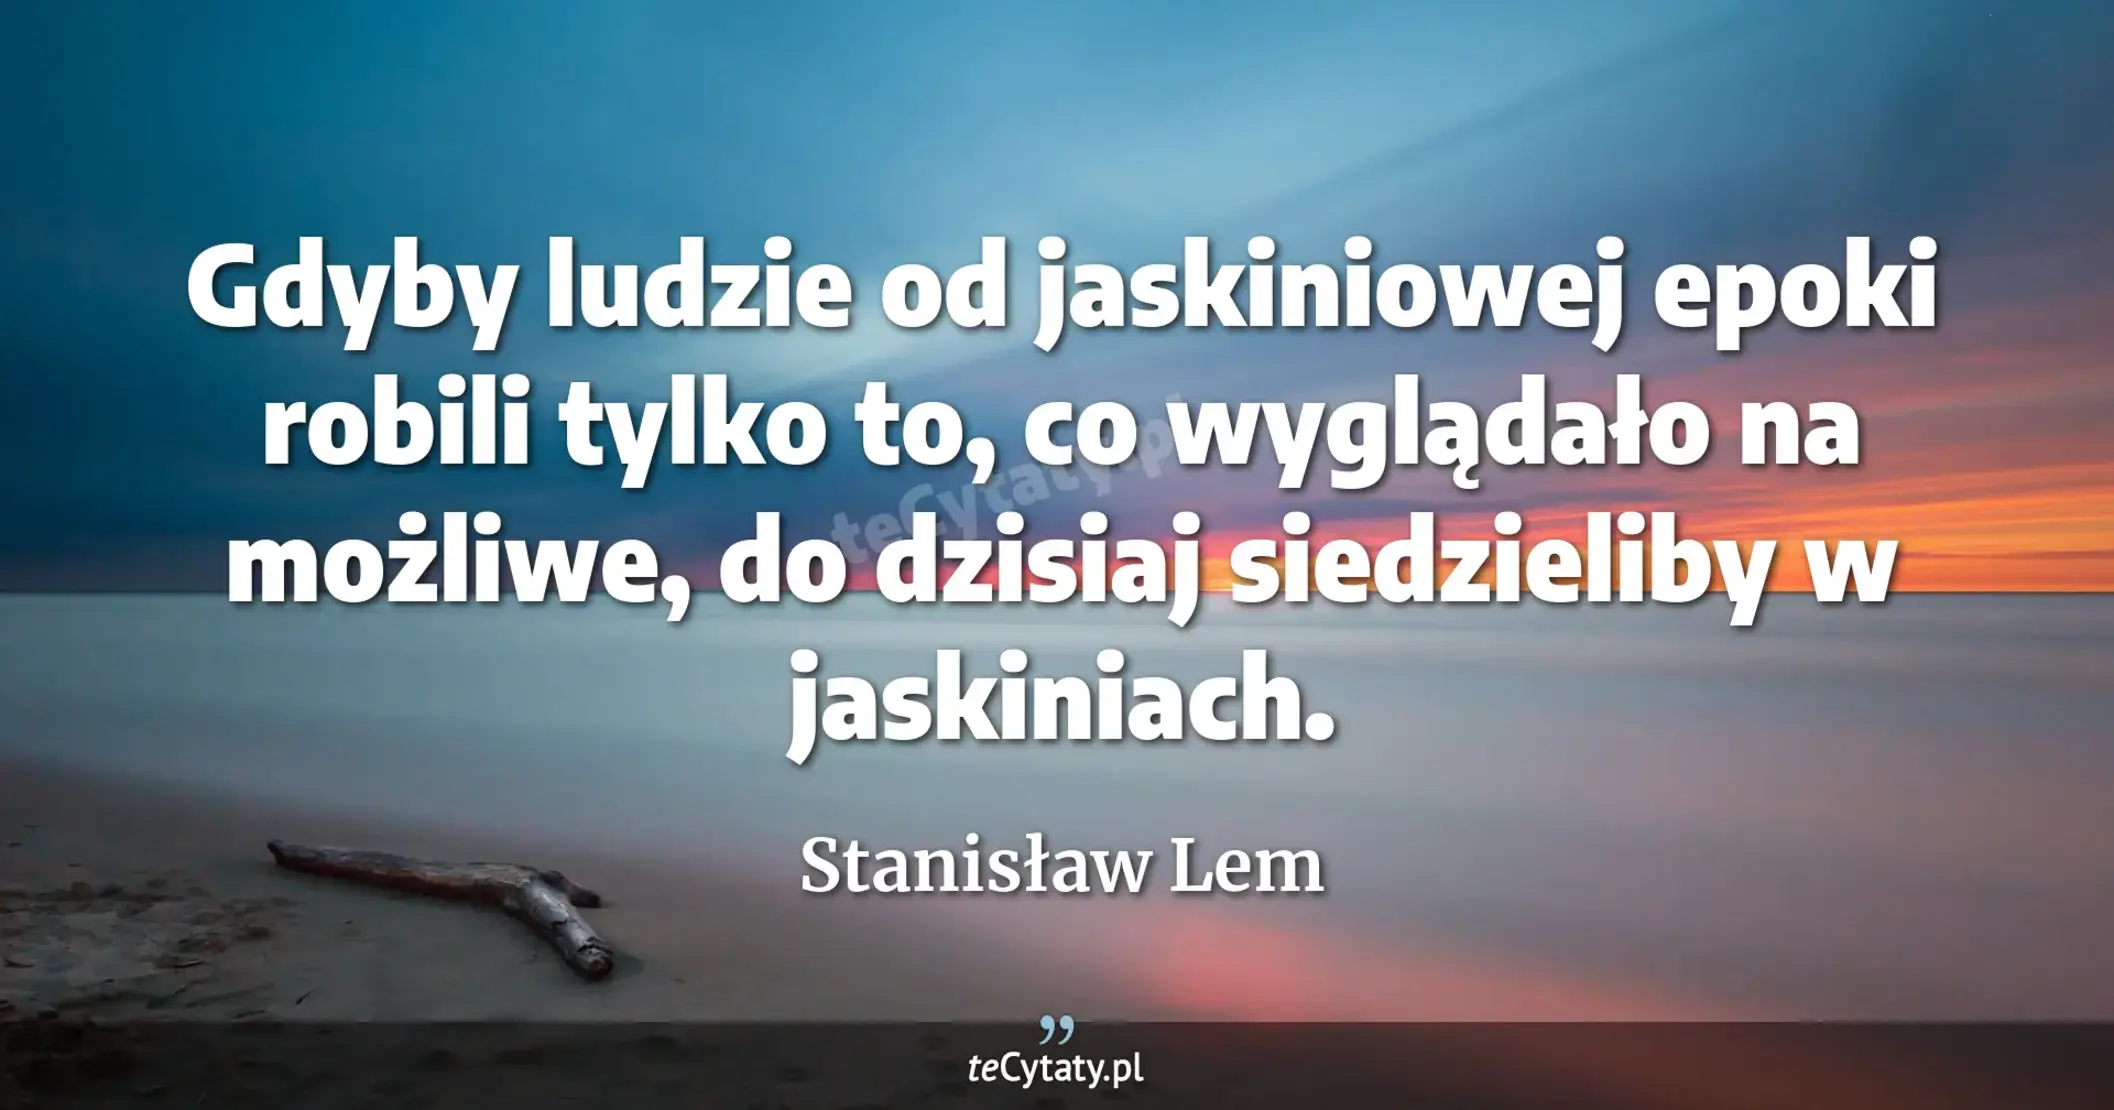 Gdyby ludzie od jaskiniowej epoki robili tylko to, co wyglądało na możliwe, do dzisiaj siedzieliby w jaskiniach. - Stanisław Lem